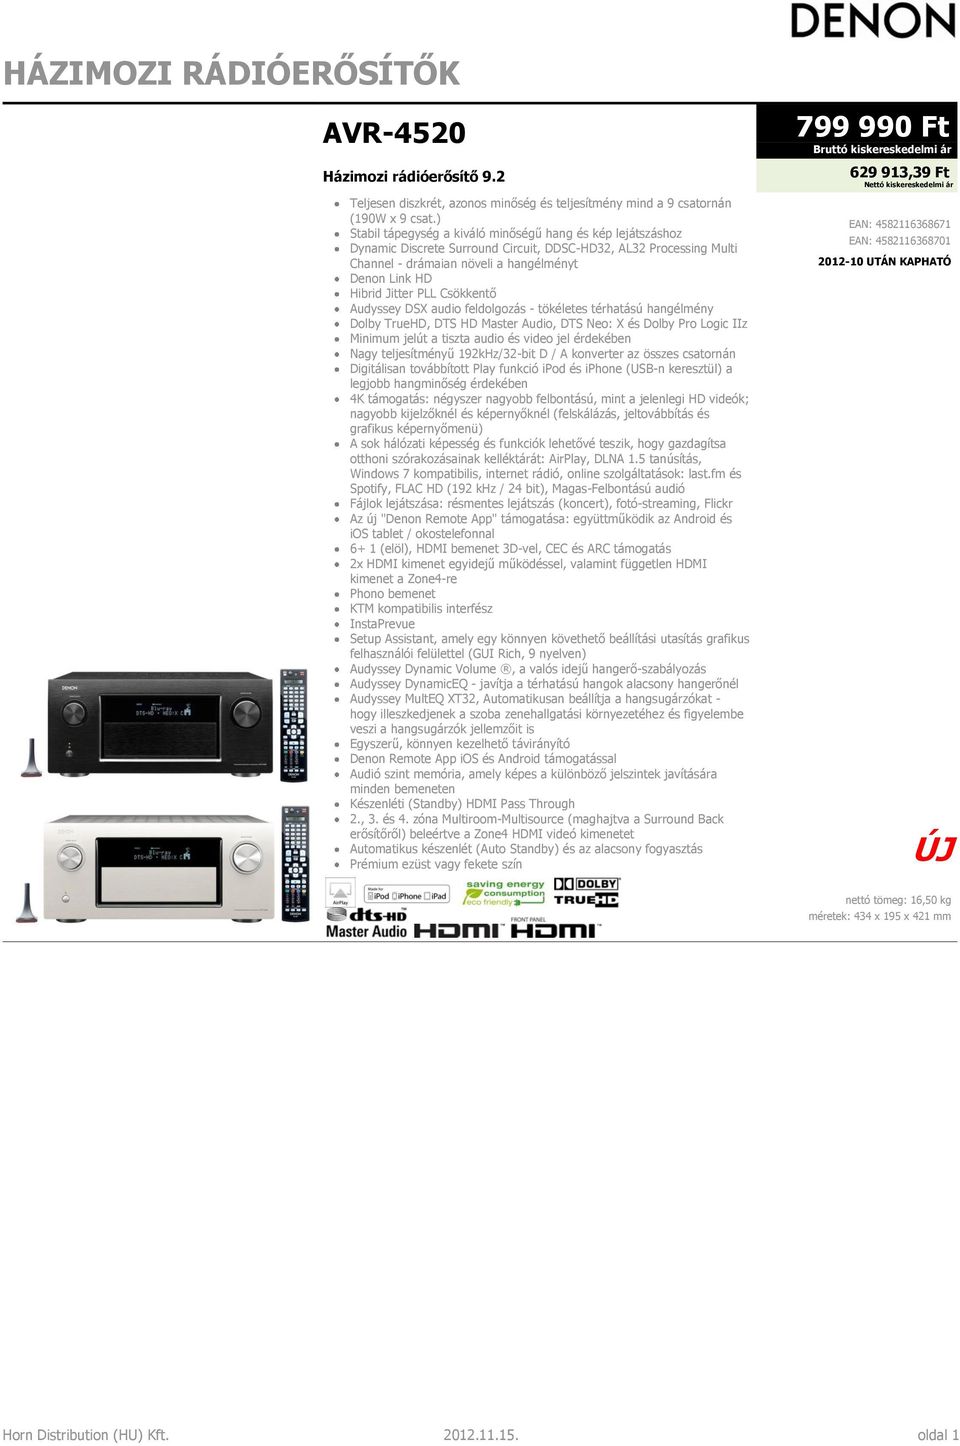 PLL Csökkentő Audyssey DSX audio feldolgozás - tökéletes térhatású hangélmény Dolby TrueHD, DTS HD Master Audio, DTS Neo: X és Dolby Pro Logic IIz Minimum jelút a tiszta audio és video jel érdekében